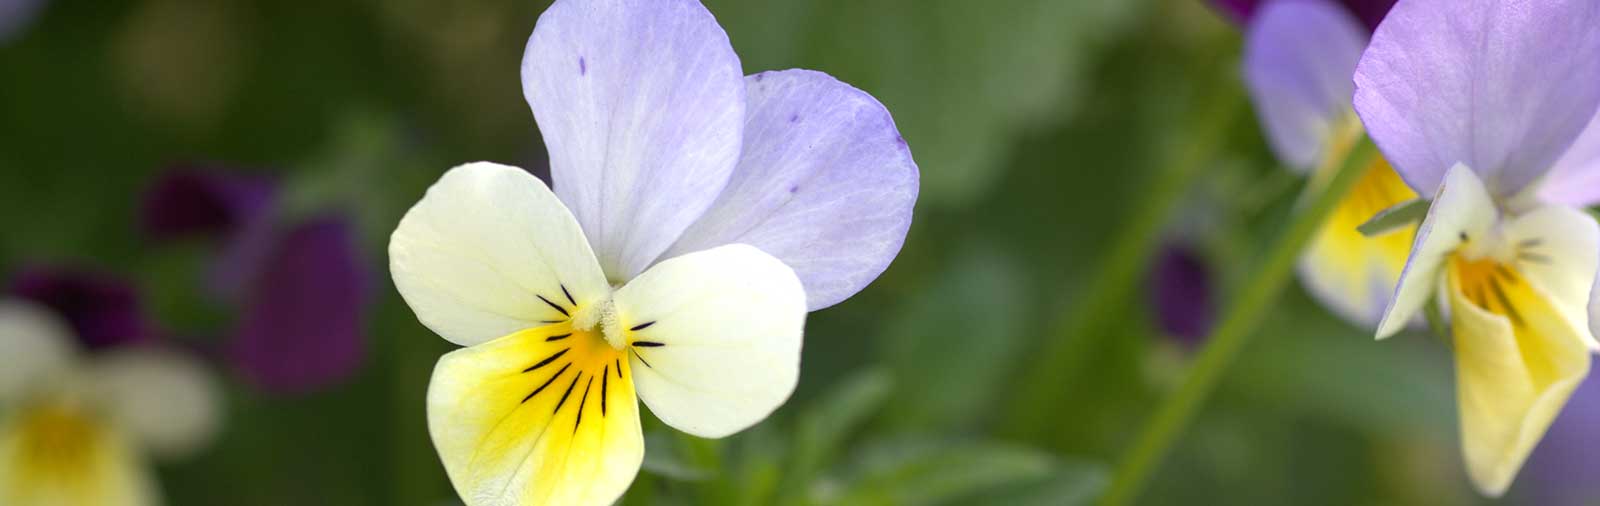 Wild Pansy (Heartsease) - Viola tricolor L.